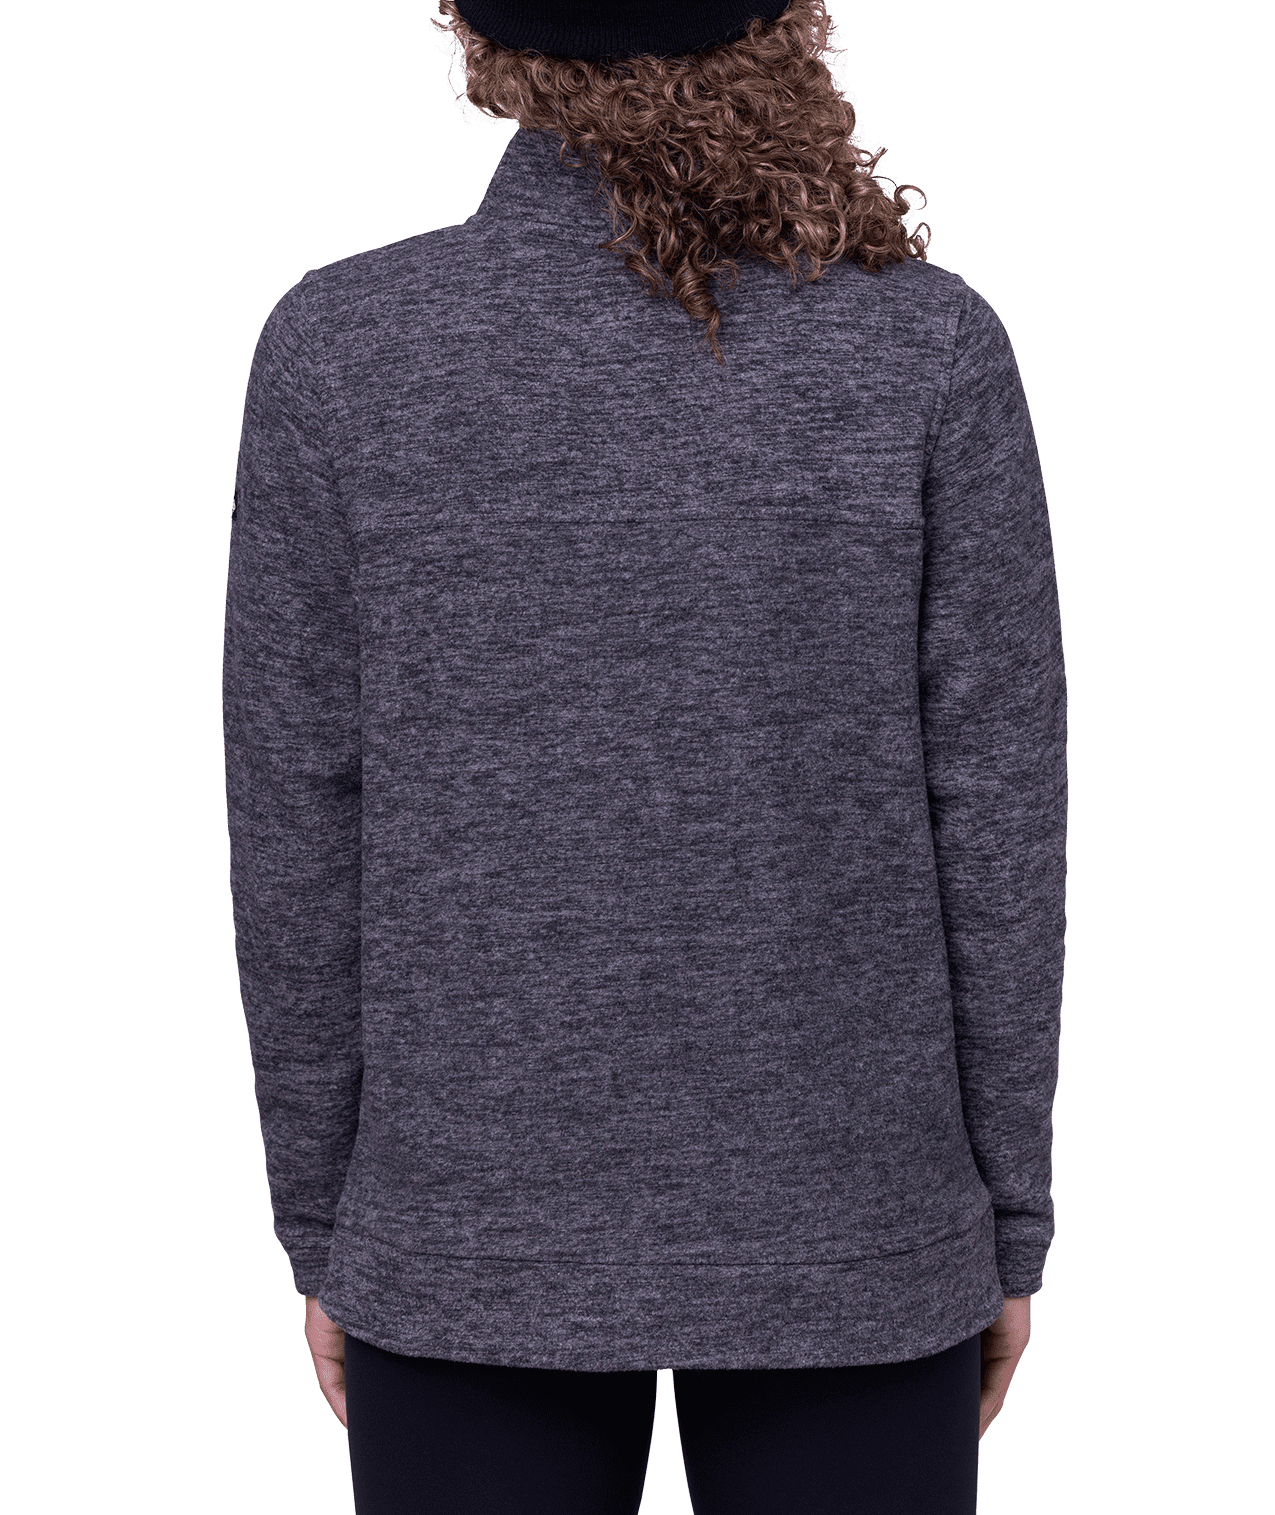 686 Women's Quarter Zip Fleece Black Women's Sweaters 686 